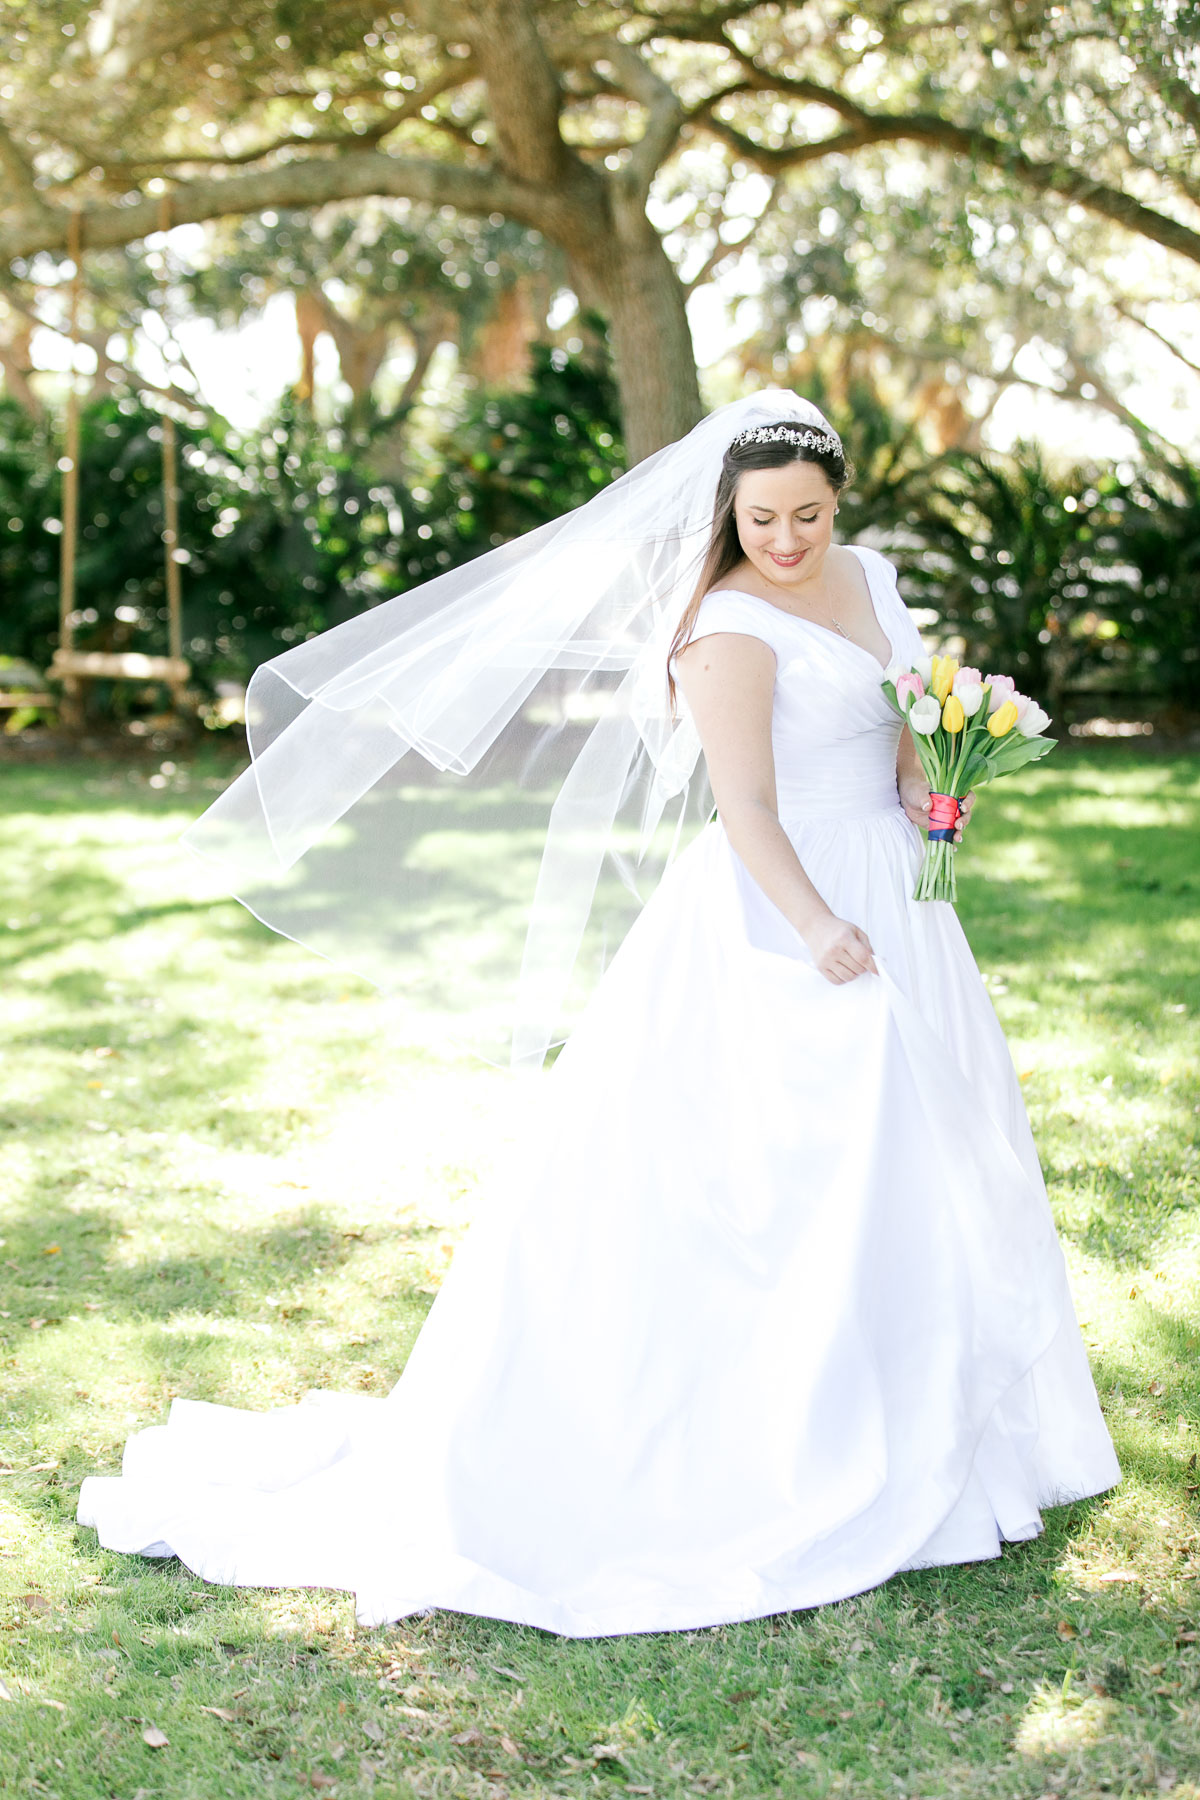 bride in ballgown wedding dress